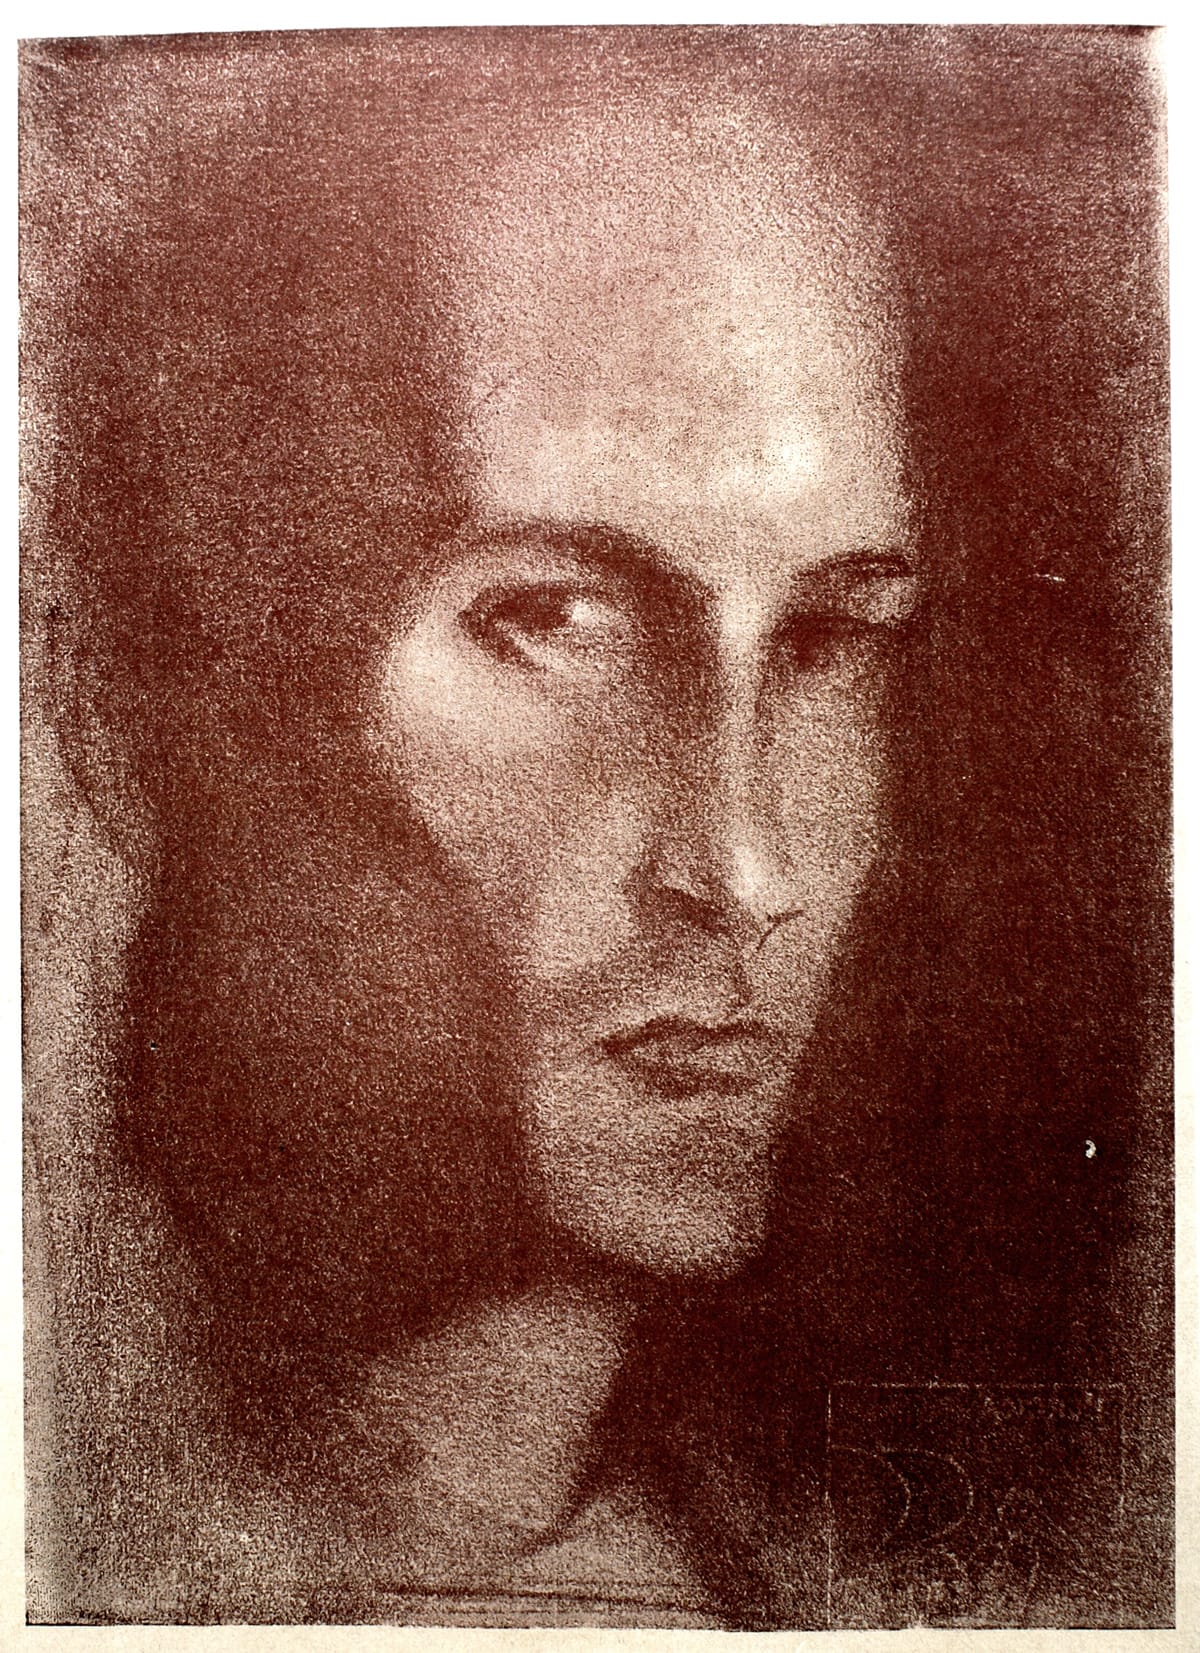 Portrait de Lanza del Vasto